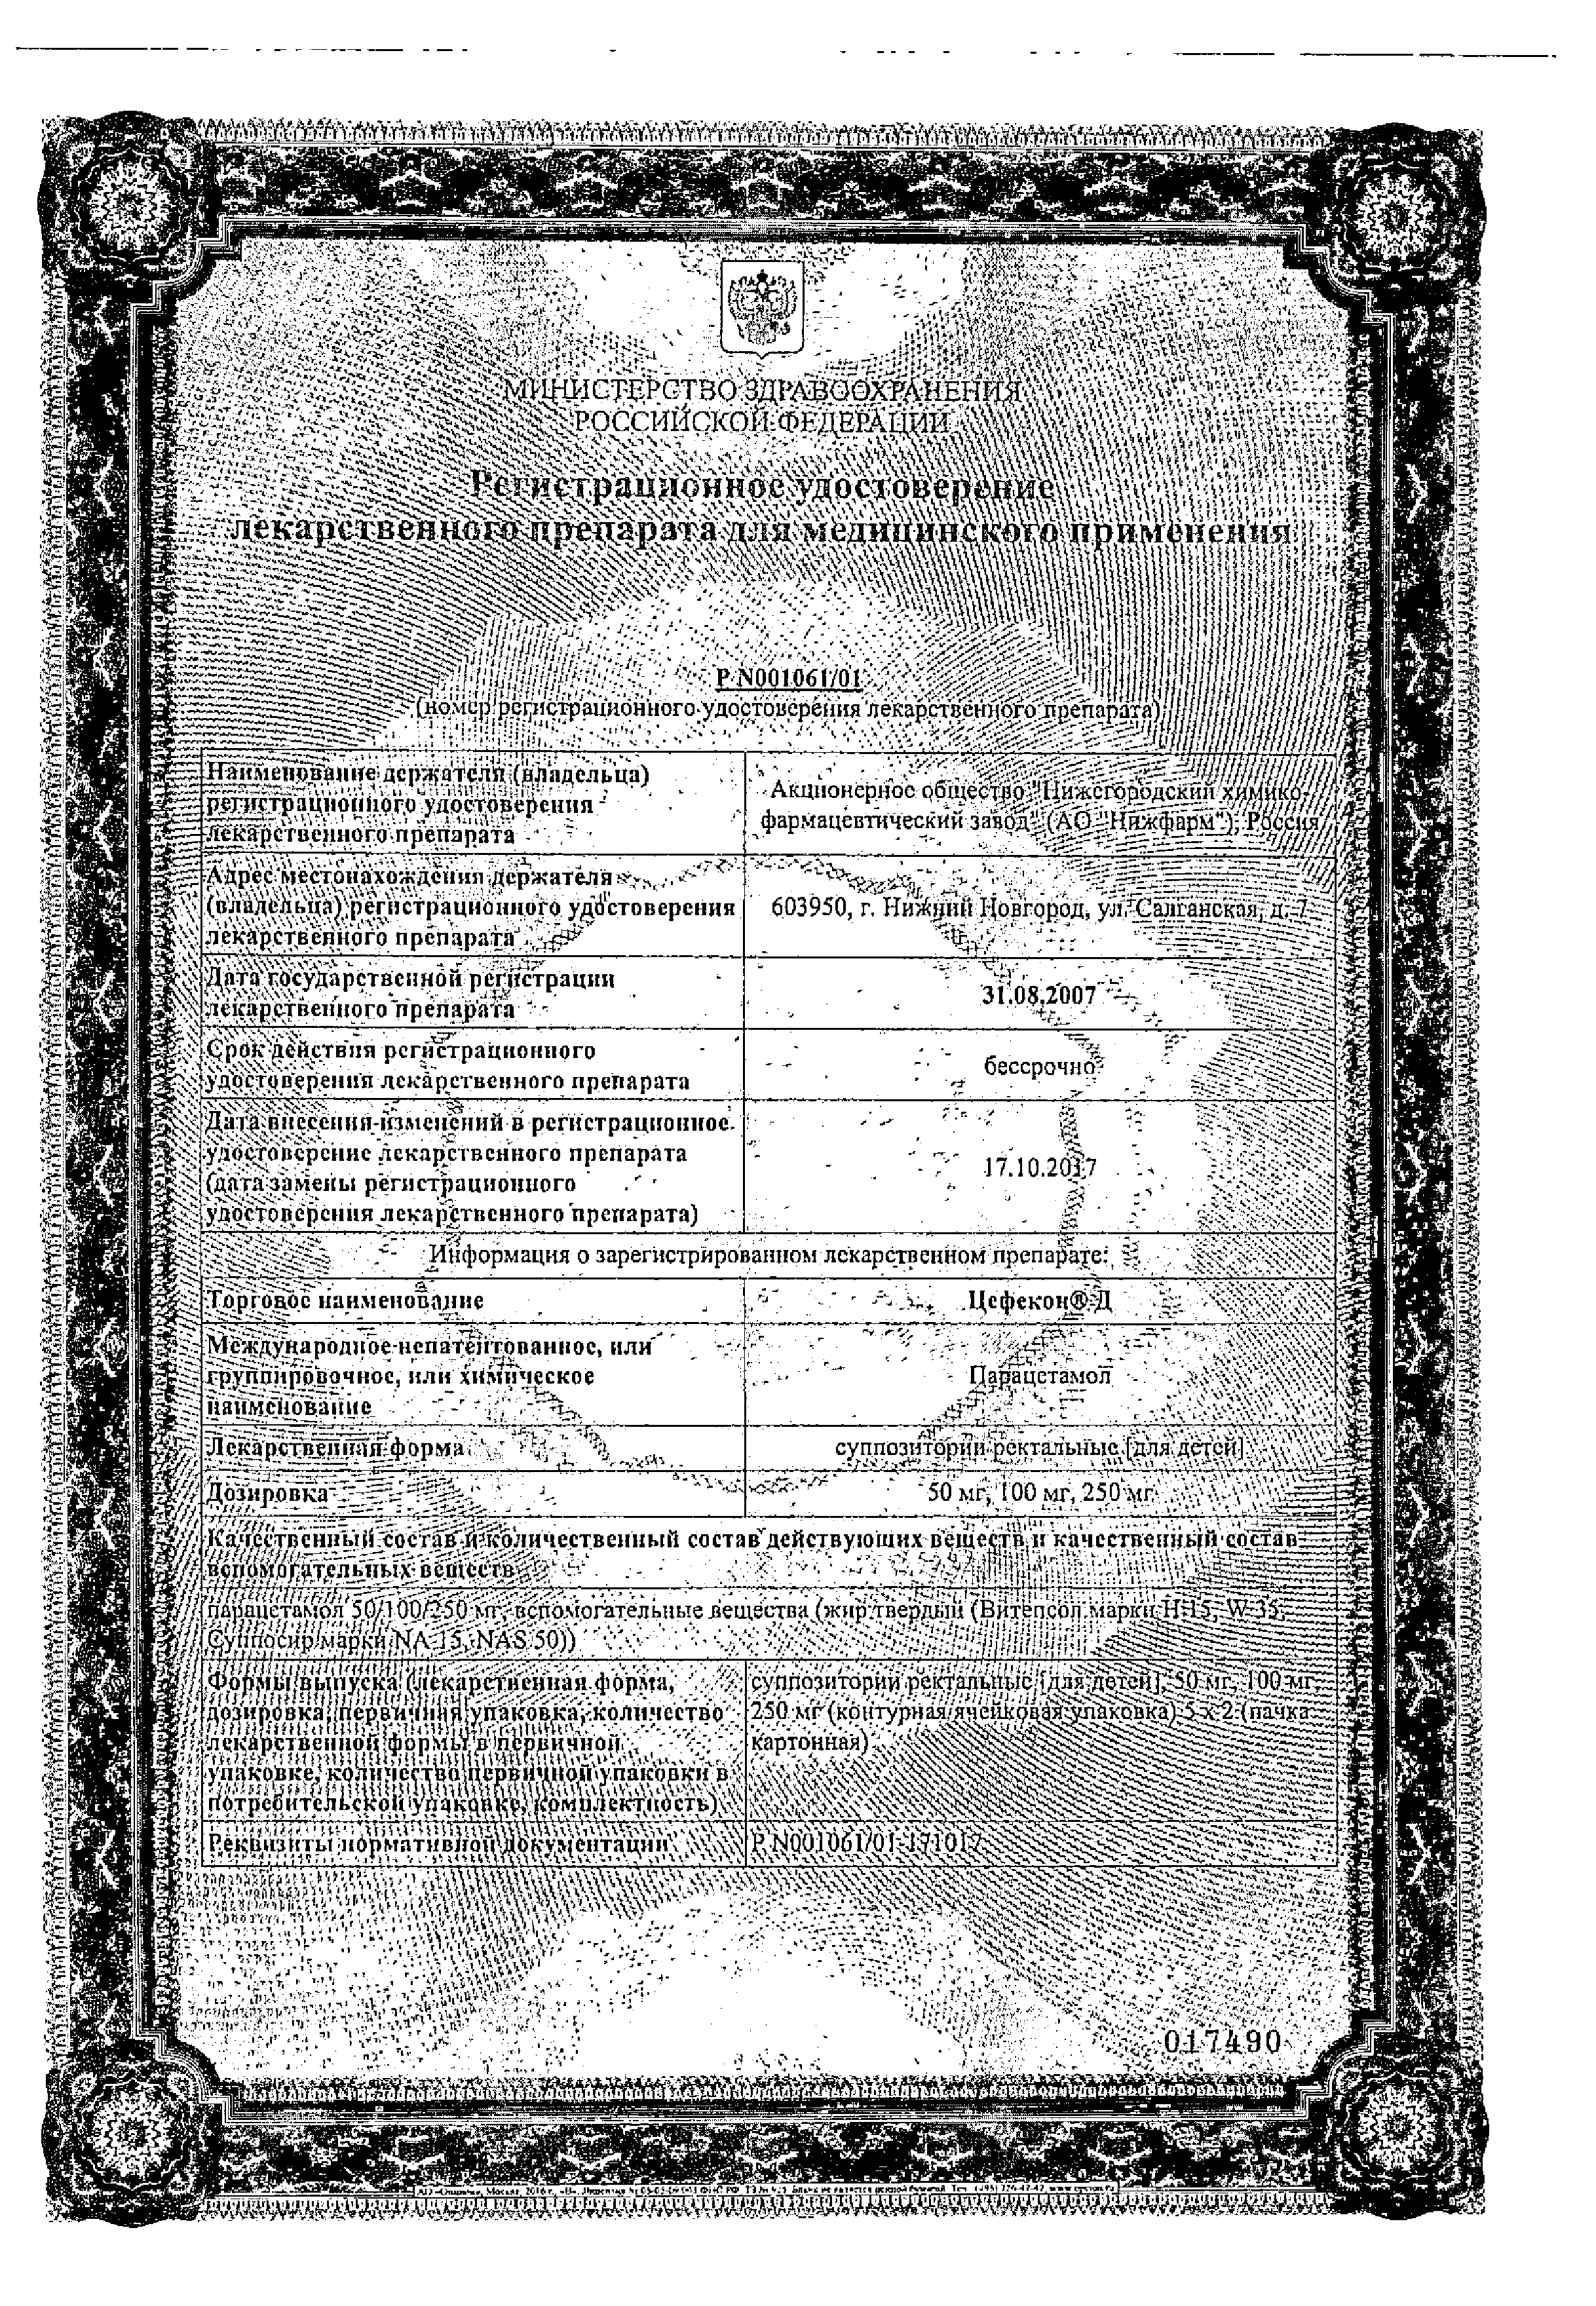 Цефекон Д сертификат